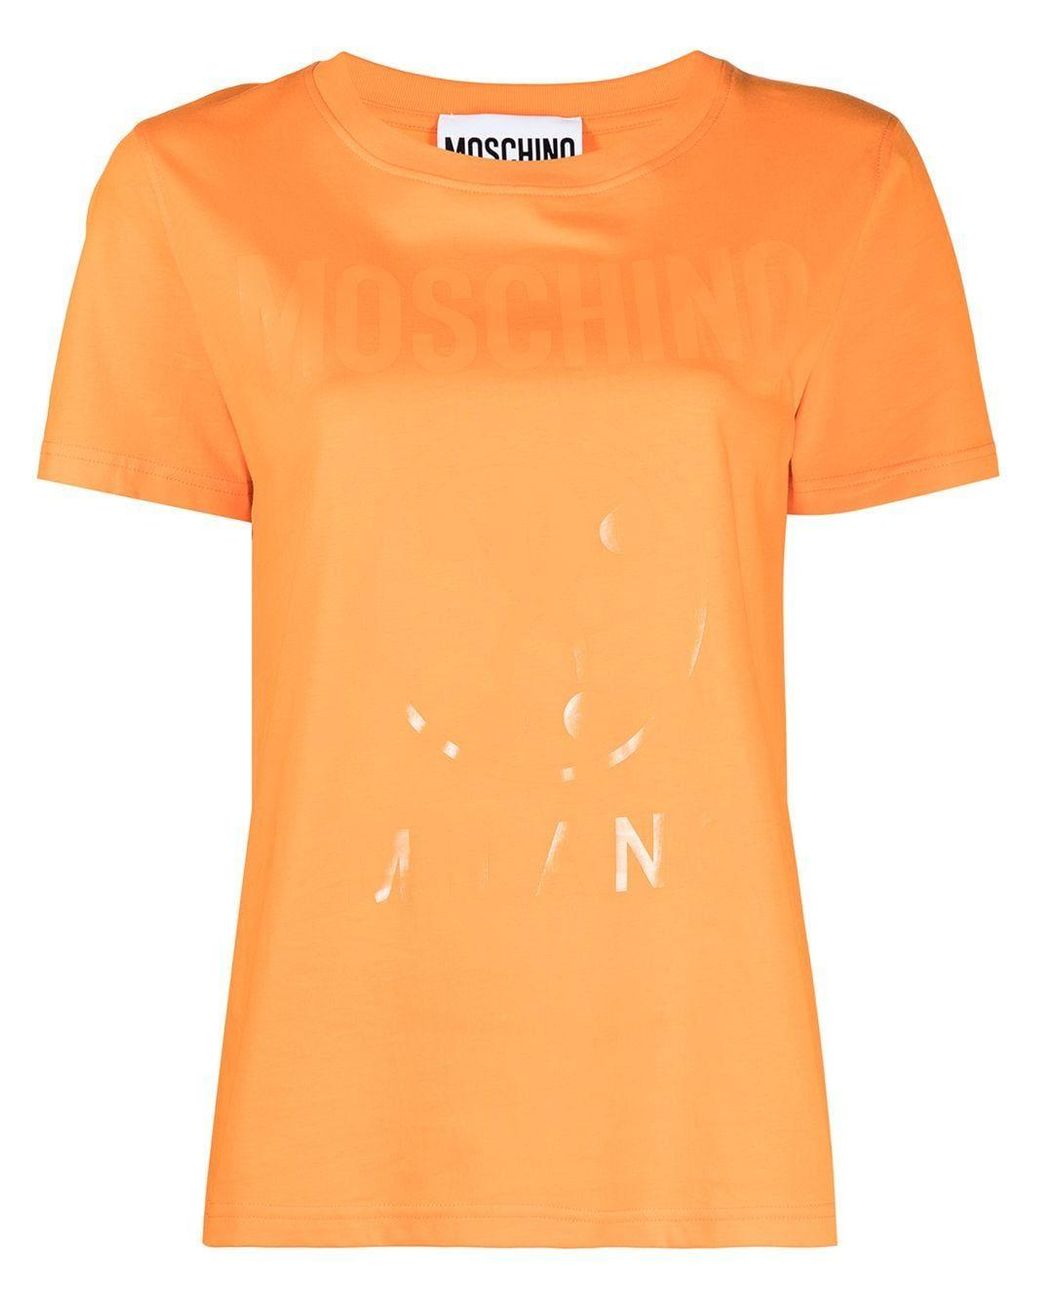 Moschino Cotton T-shirt in Orange - Lyst